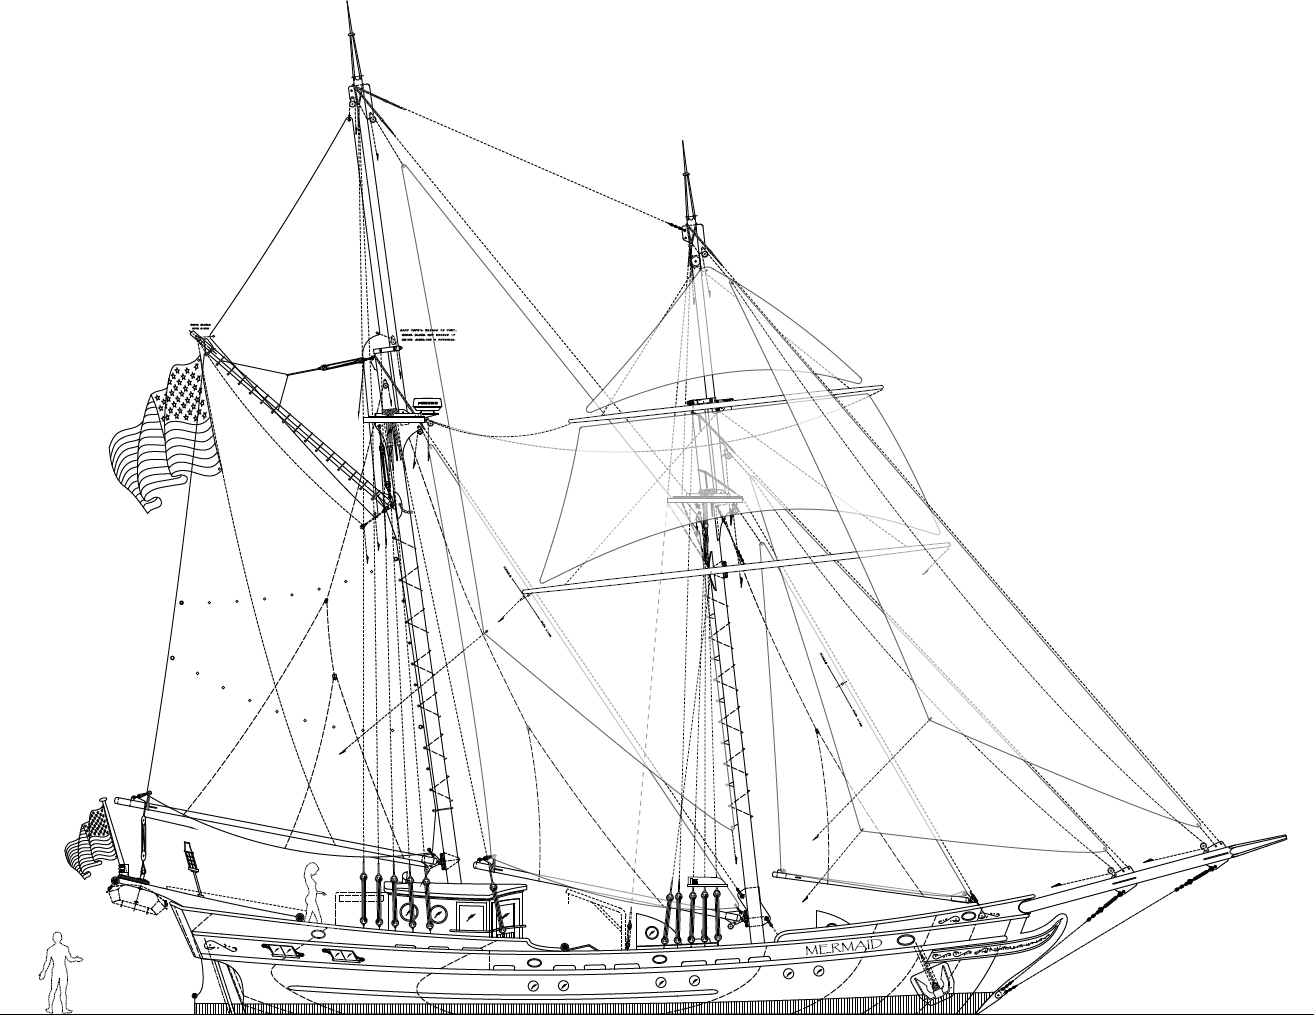 61' MERMAID - An Authentic 1700's Brigantine by Kasten Marine Design, Inc.